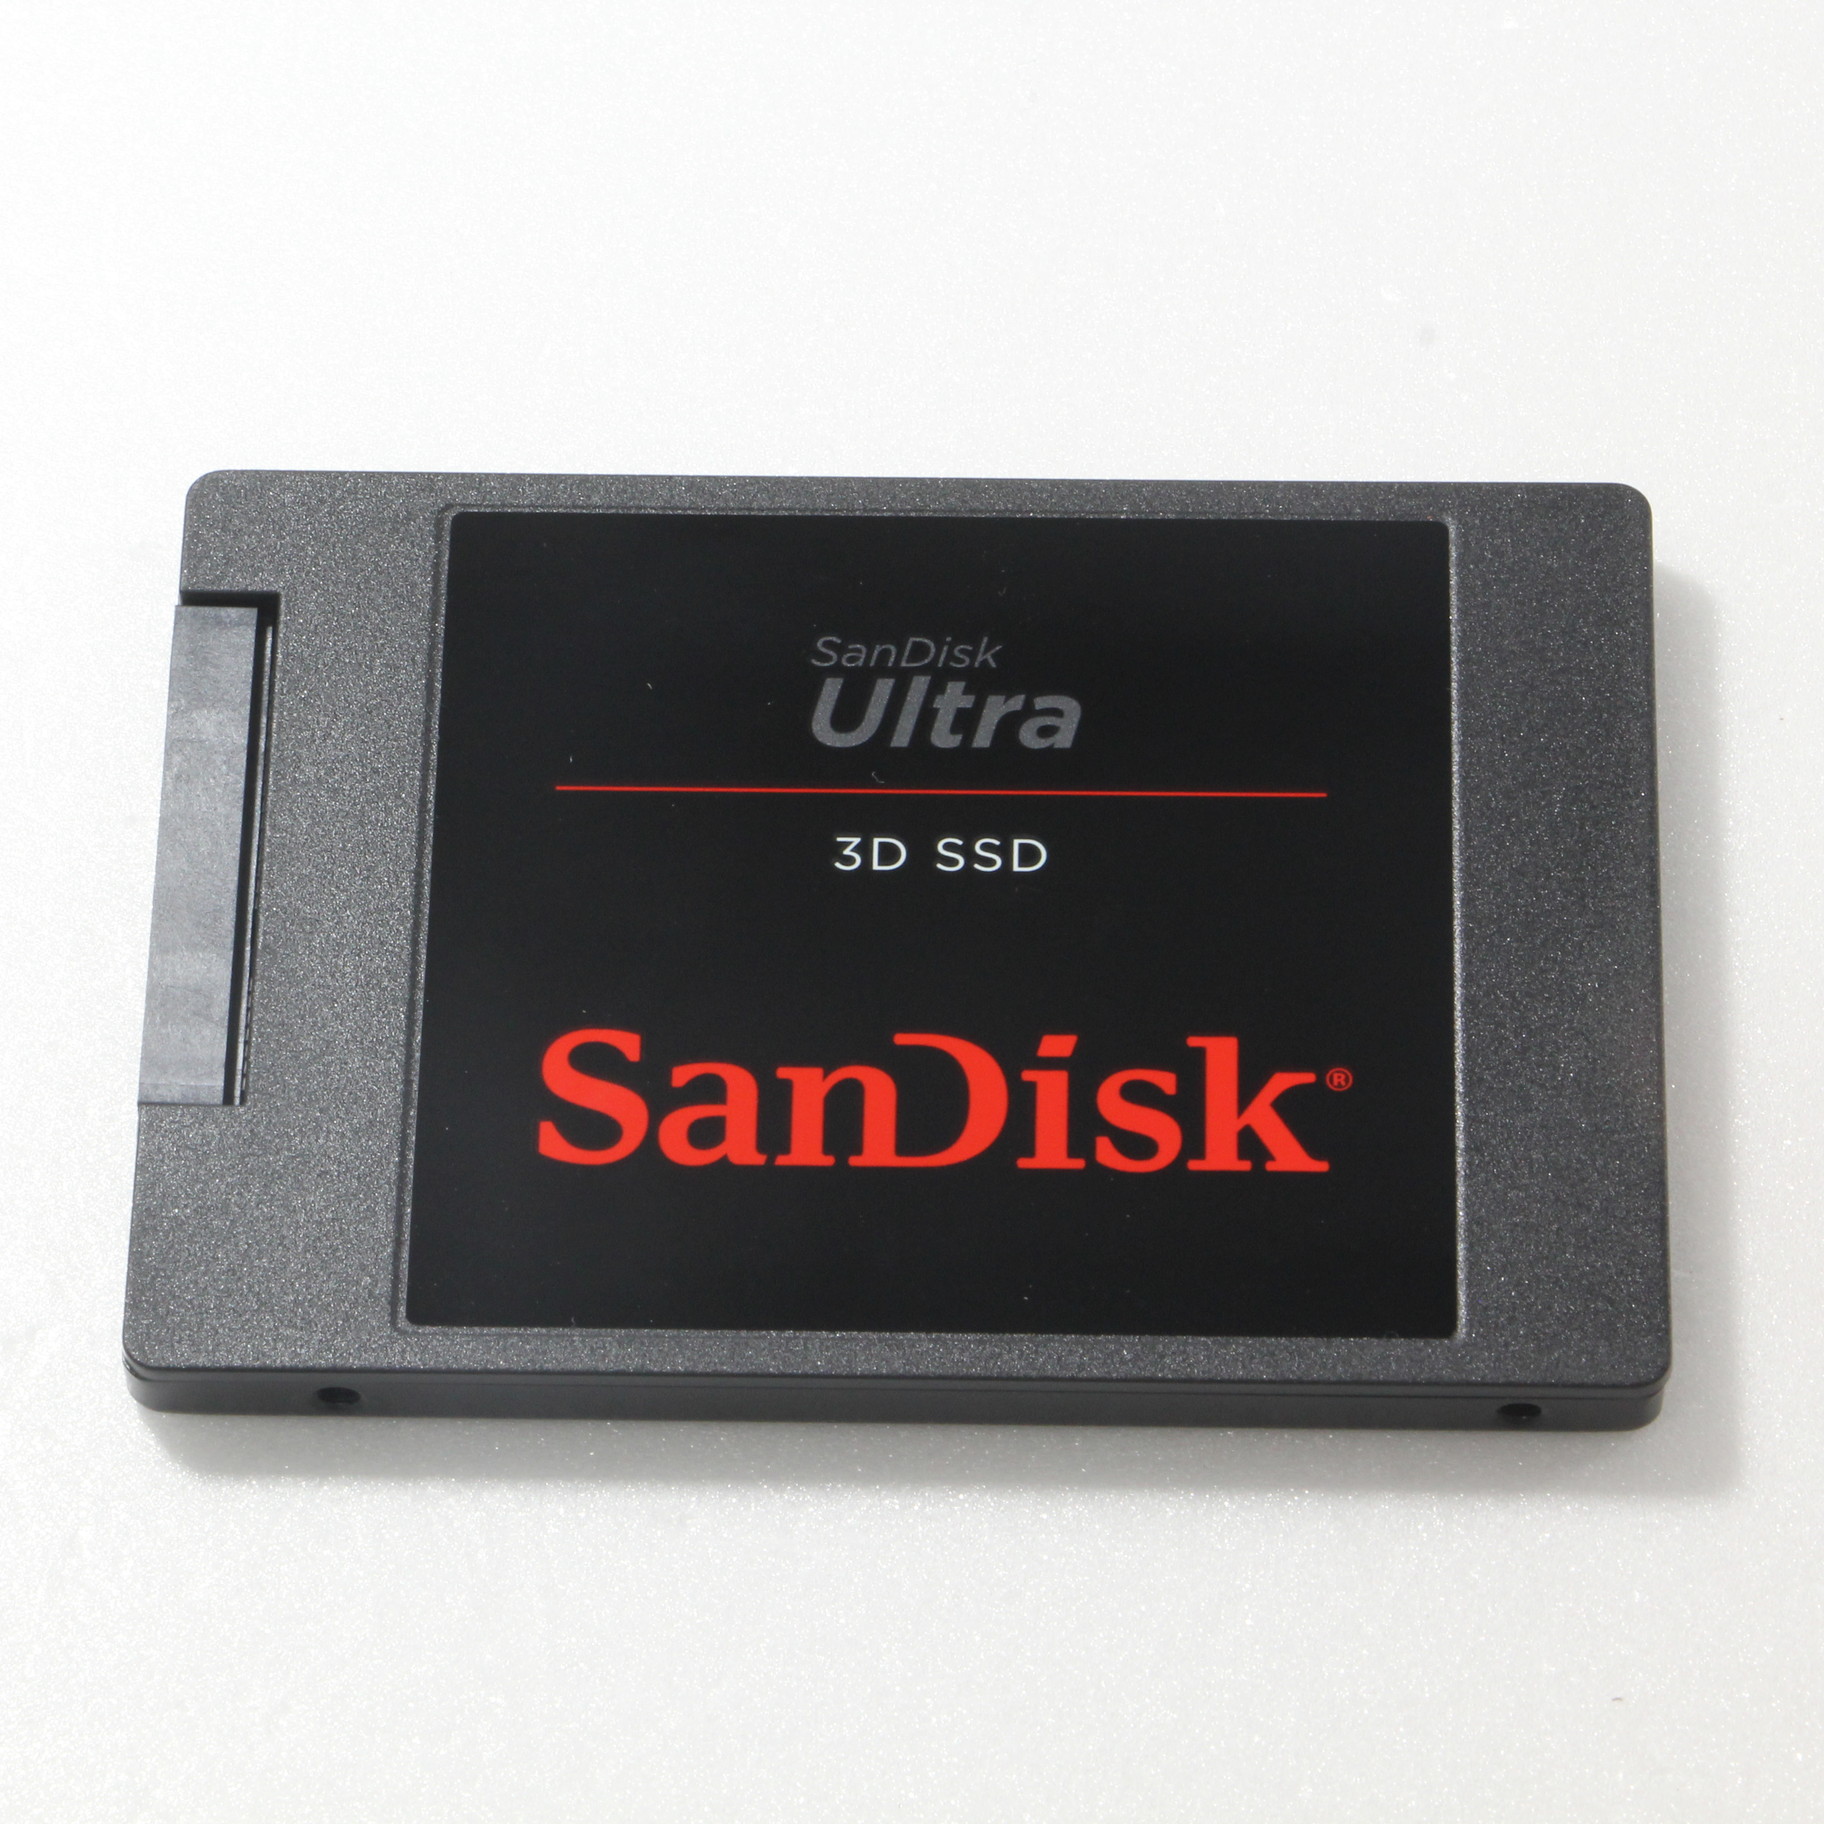 サンディスク ウルトラ 3D SSD 1TB - PCパーツ